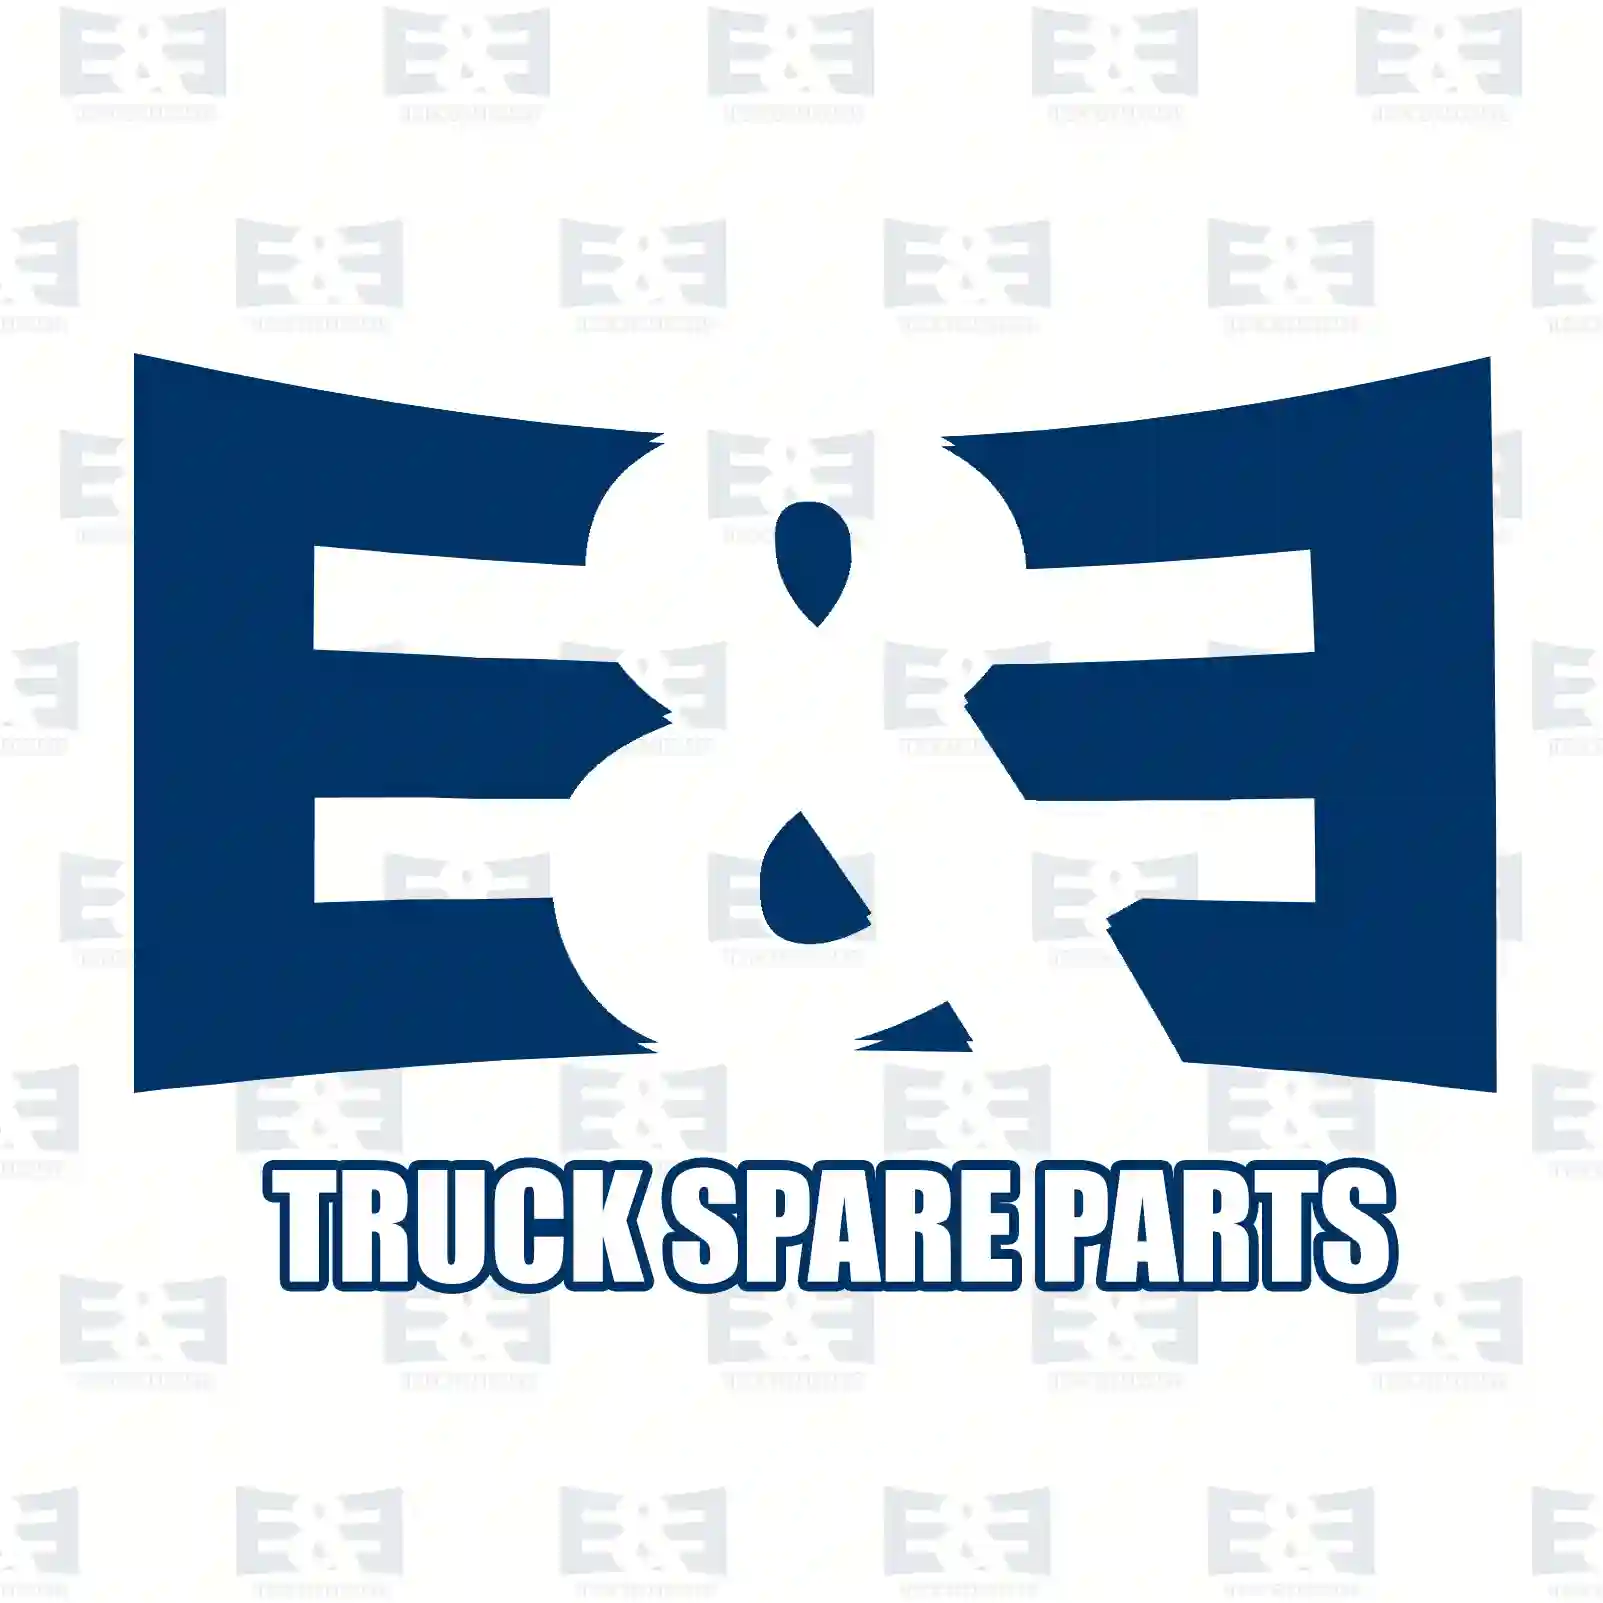 Fan clutch, 2E2202110, 5010514380, 7420942492, 7482204410 ||  2E2202110 E&E Truck Spare Parts | Truck Spare Parts, Auotomotive Spare Parts Fan clutch, 2E2202110, 5010514380, 7420942492, 7482204410 ||  2E2202110 E&E Truck Spare Parts | Truck Spare Parts, Auotomotive Spare Parts